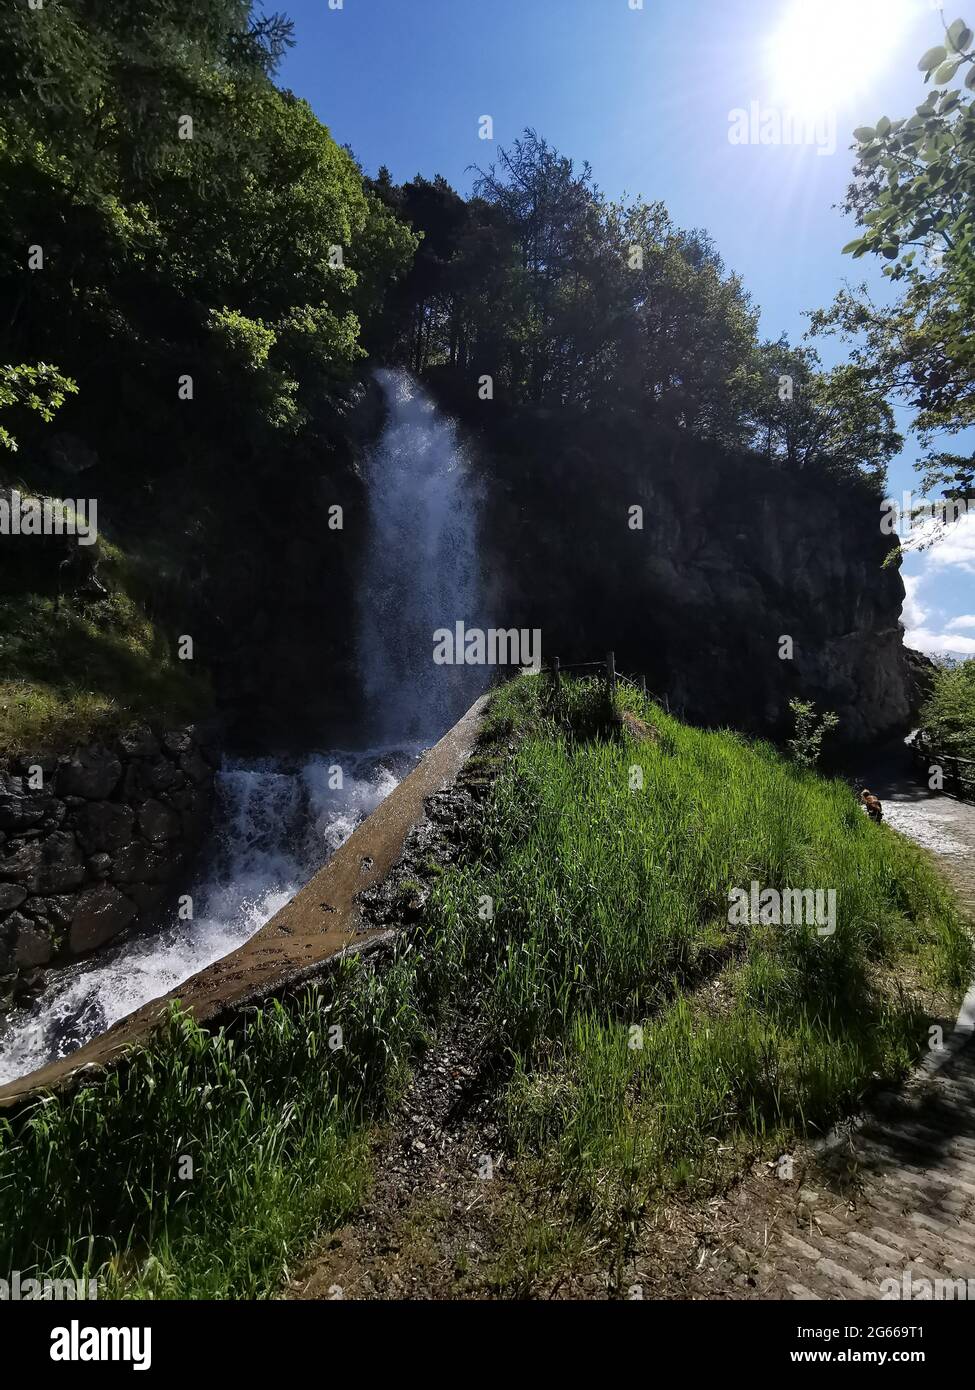 Cascata di Arlaz, il piccolo torrente Ru d'Arlaz scende vicino al sentiero  di una grande passeggiata in Val d'Ayas, Aosta, Italia Foto stock - Alamy